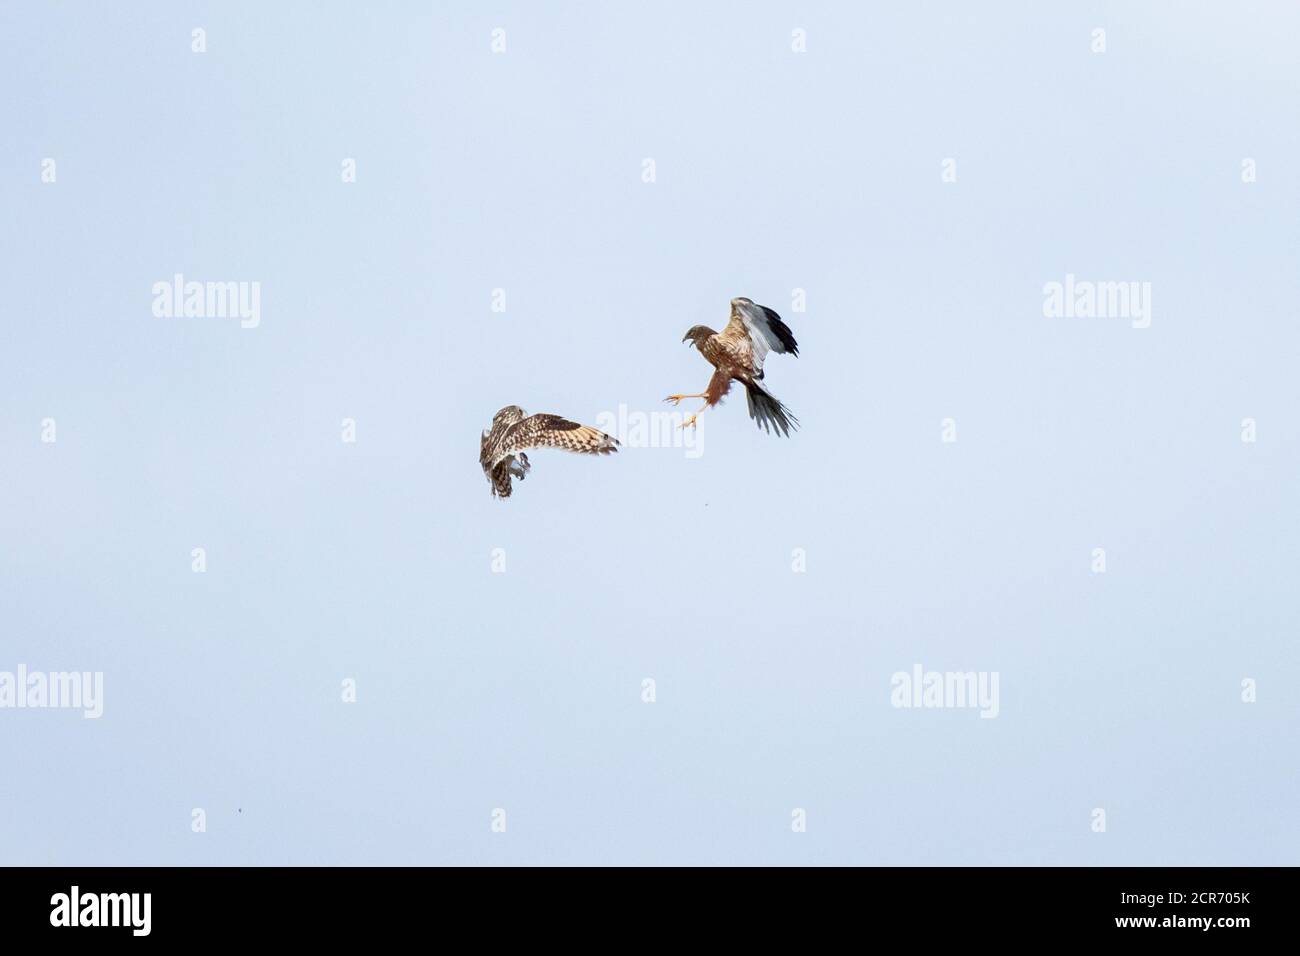 Allemagne, Basse-Saxe, Juist, Marsh Harrier (Circus aeruginosus), dans un combat de chien avec un hibou à courte distance. Banque D'Images